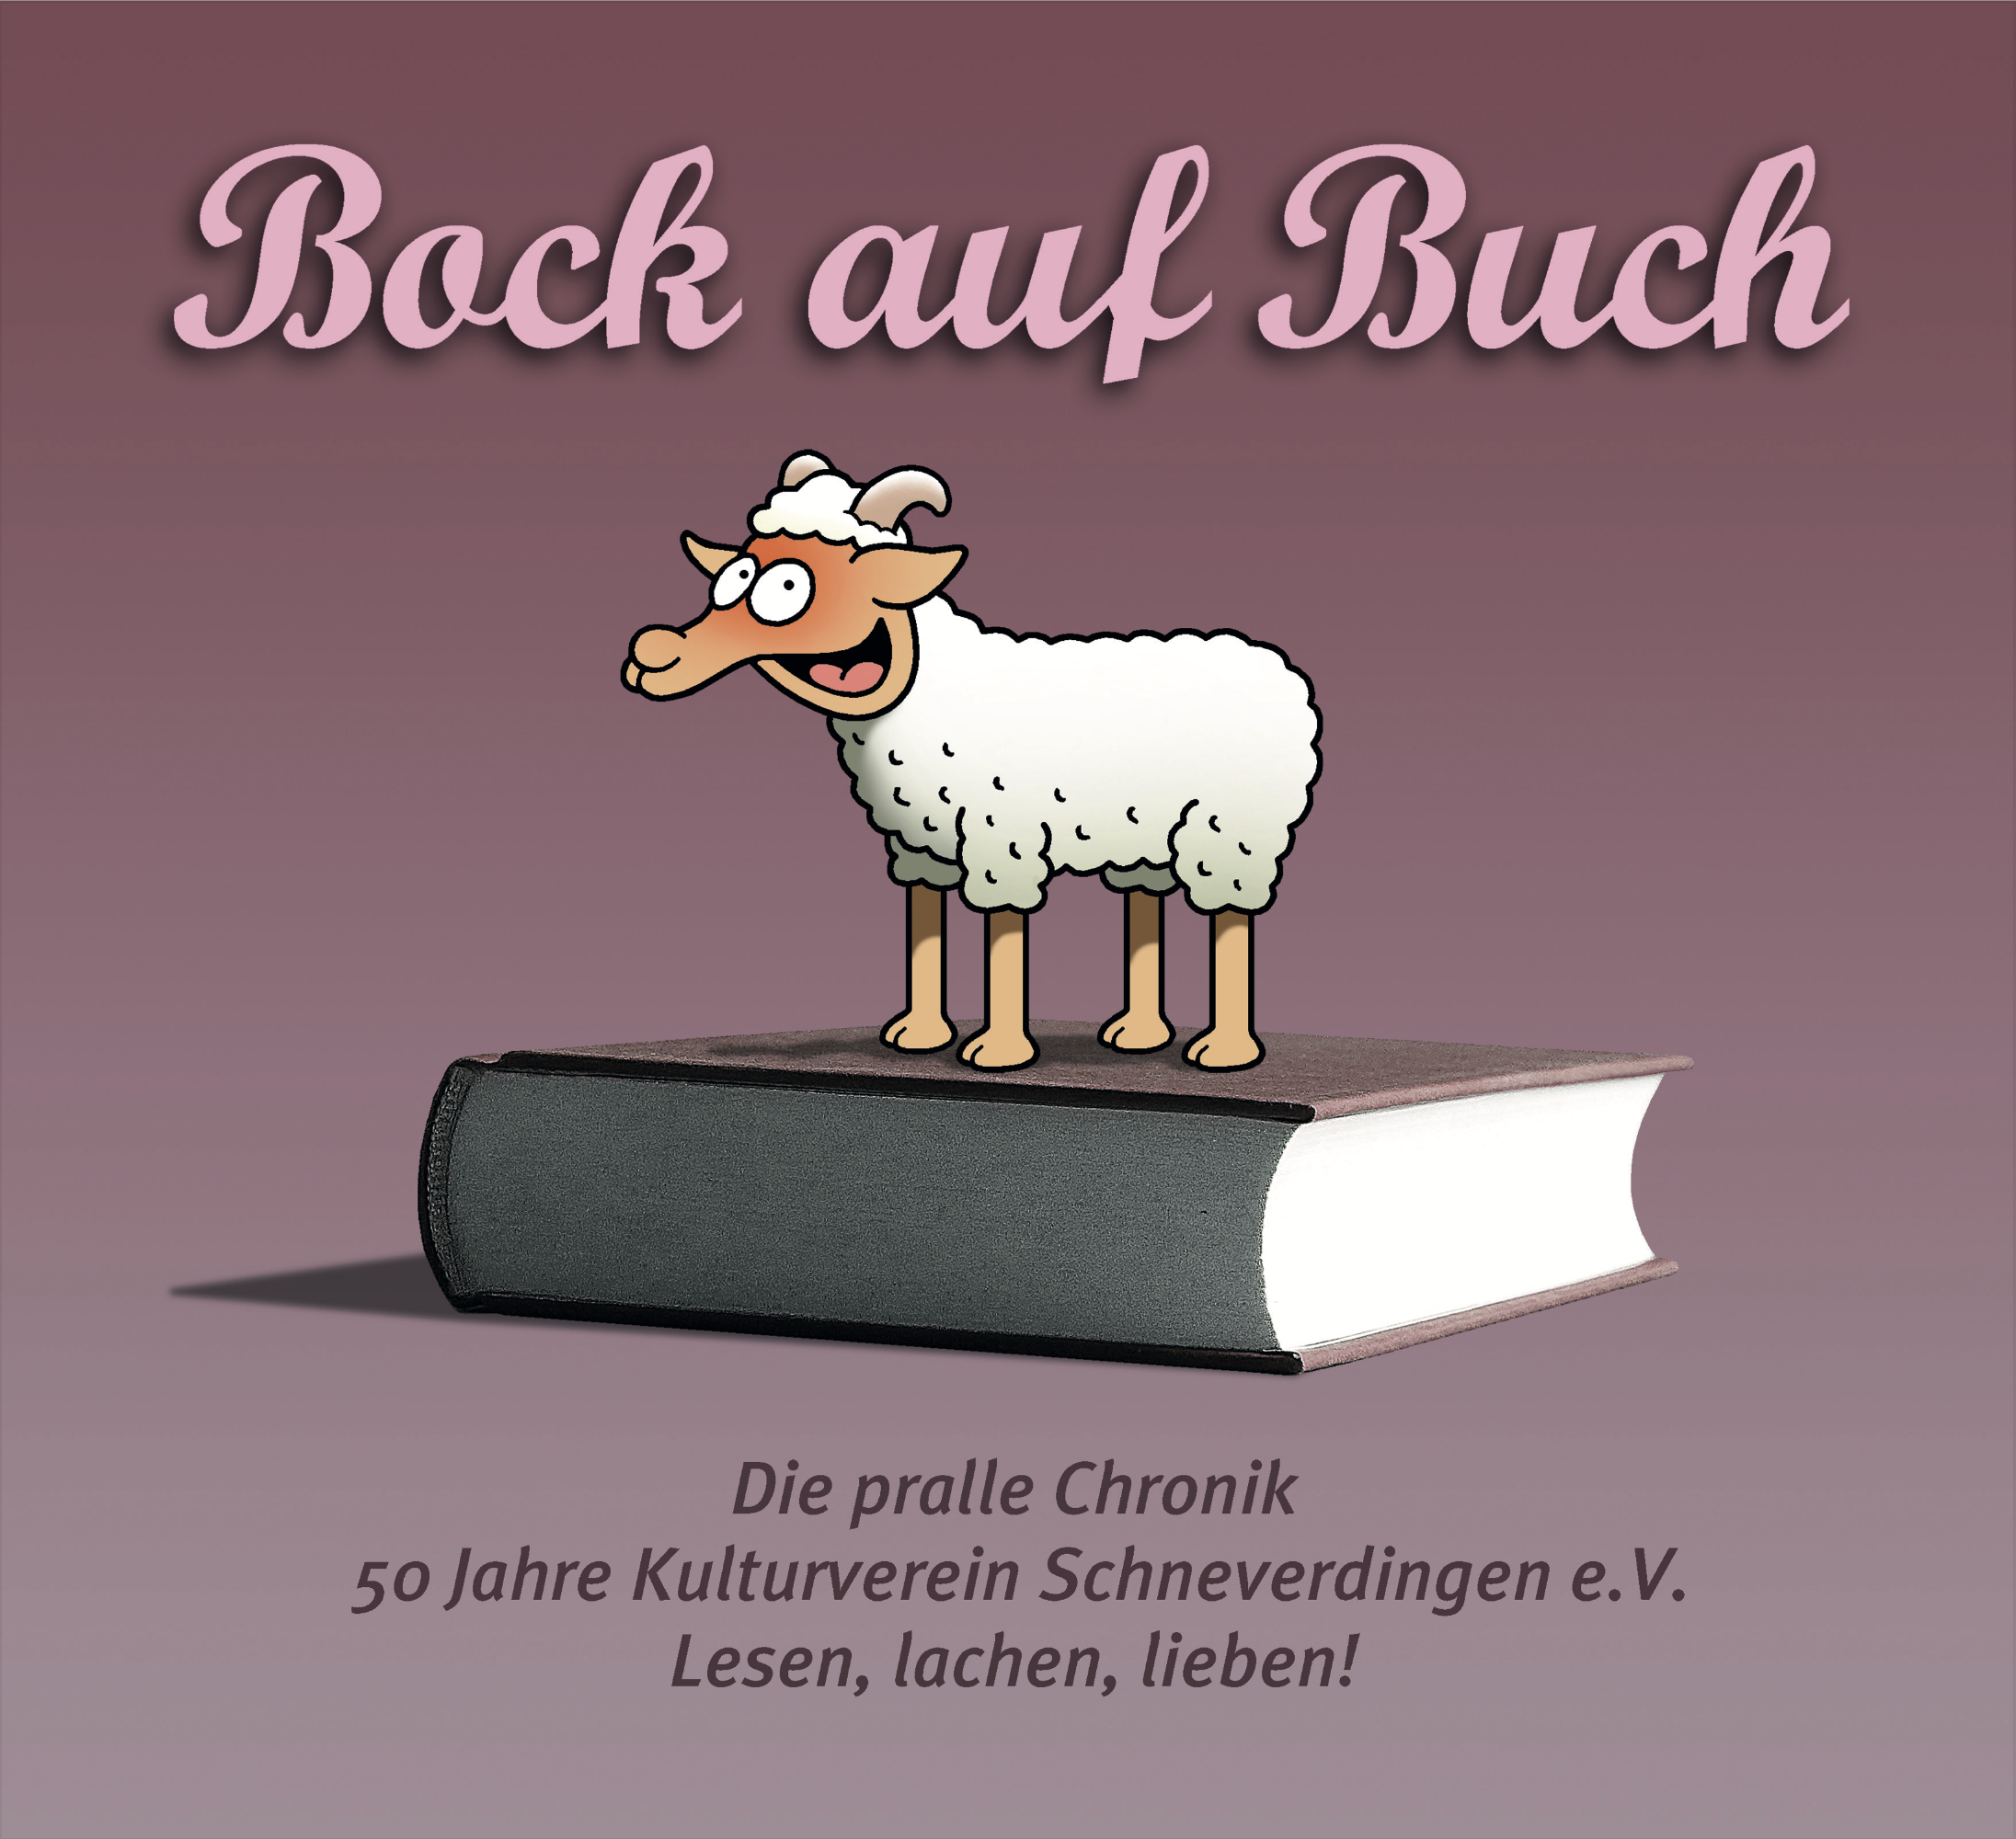 Chronik 50 Jahre Kulturverein e. V. „Bock auf Buch“